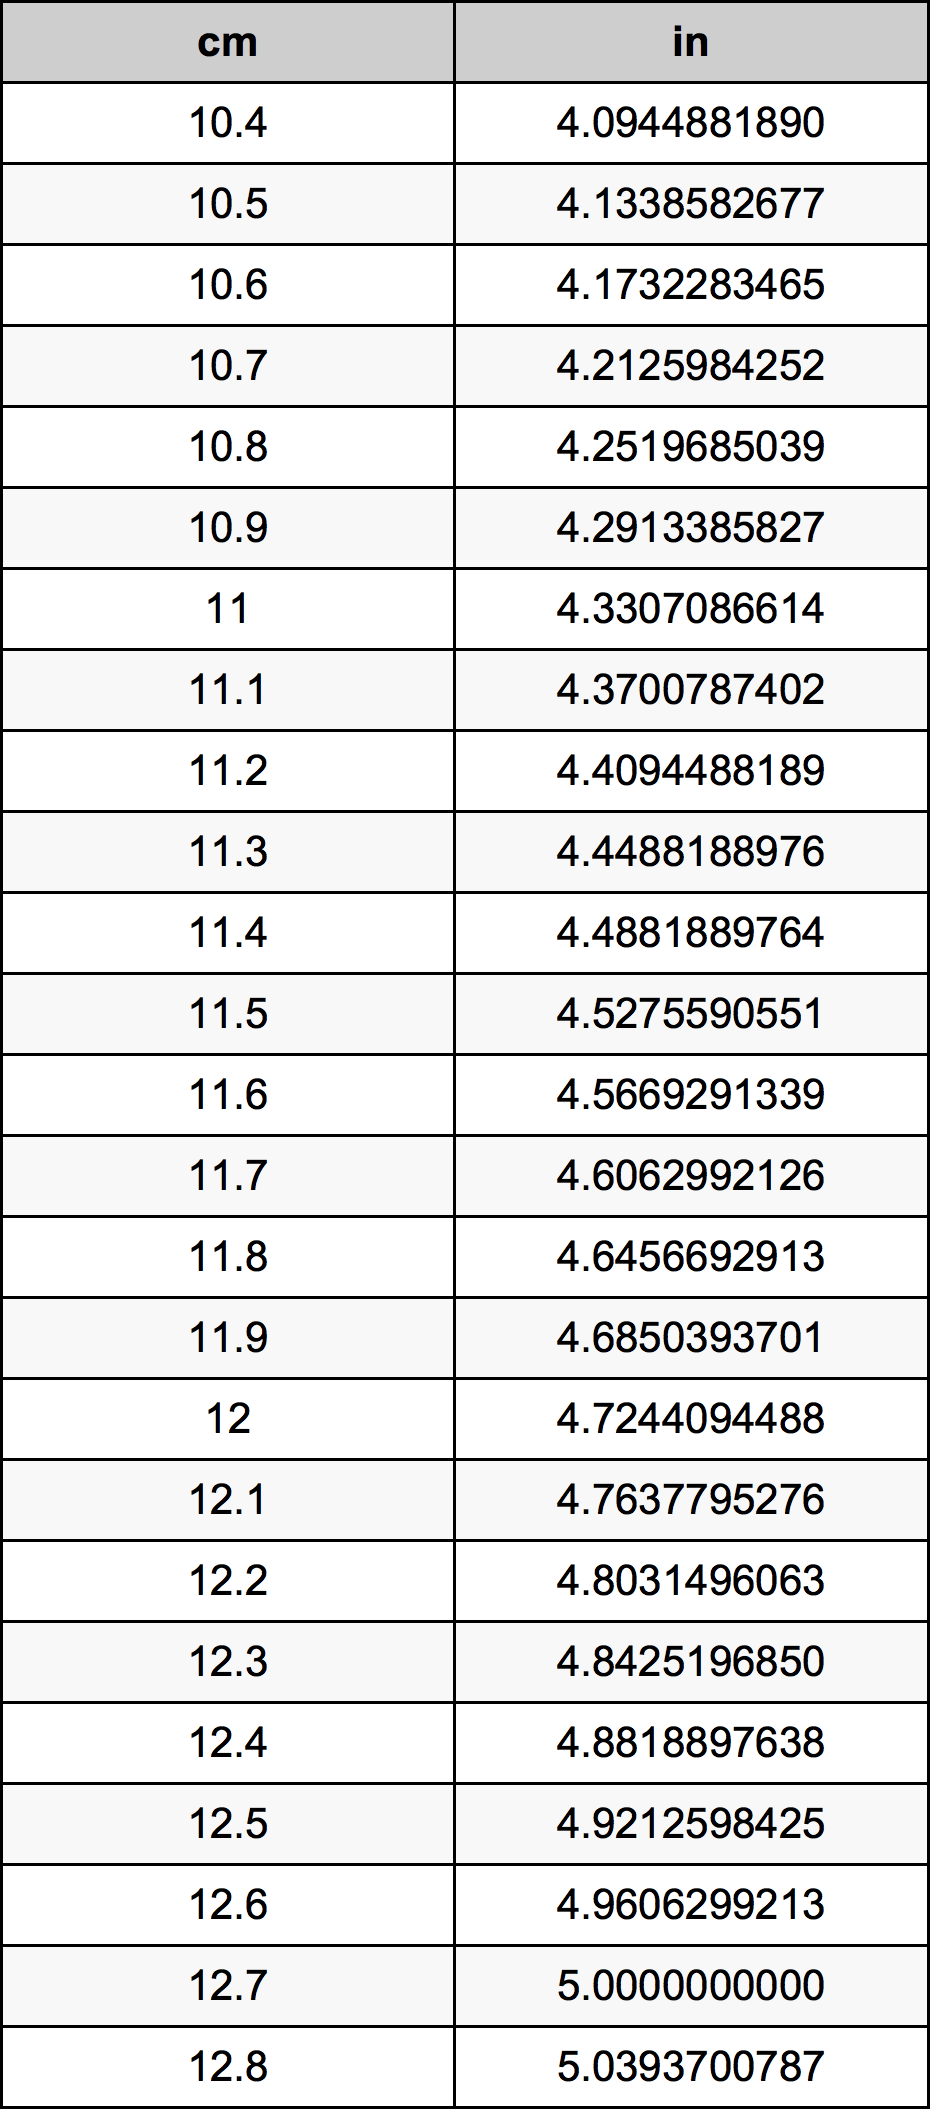 11.6 Centiméter átszámítási táblázat